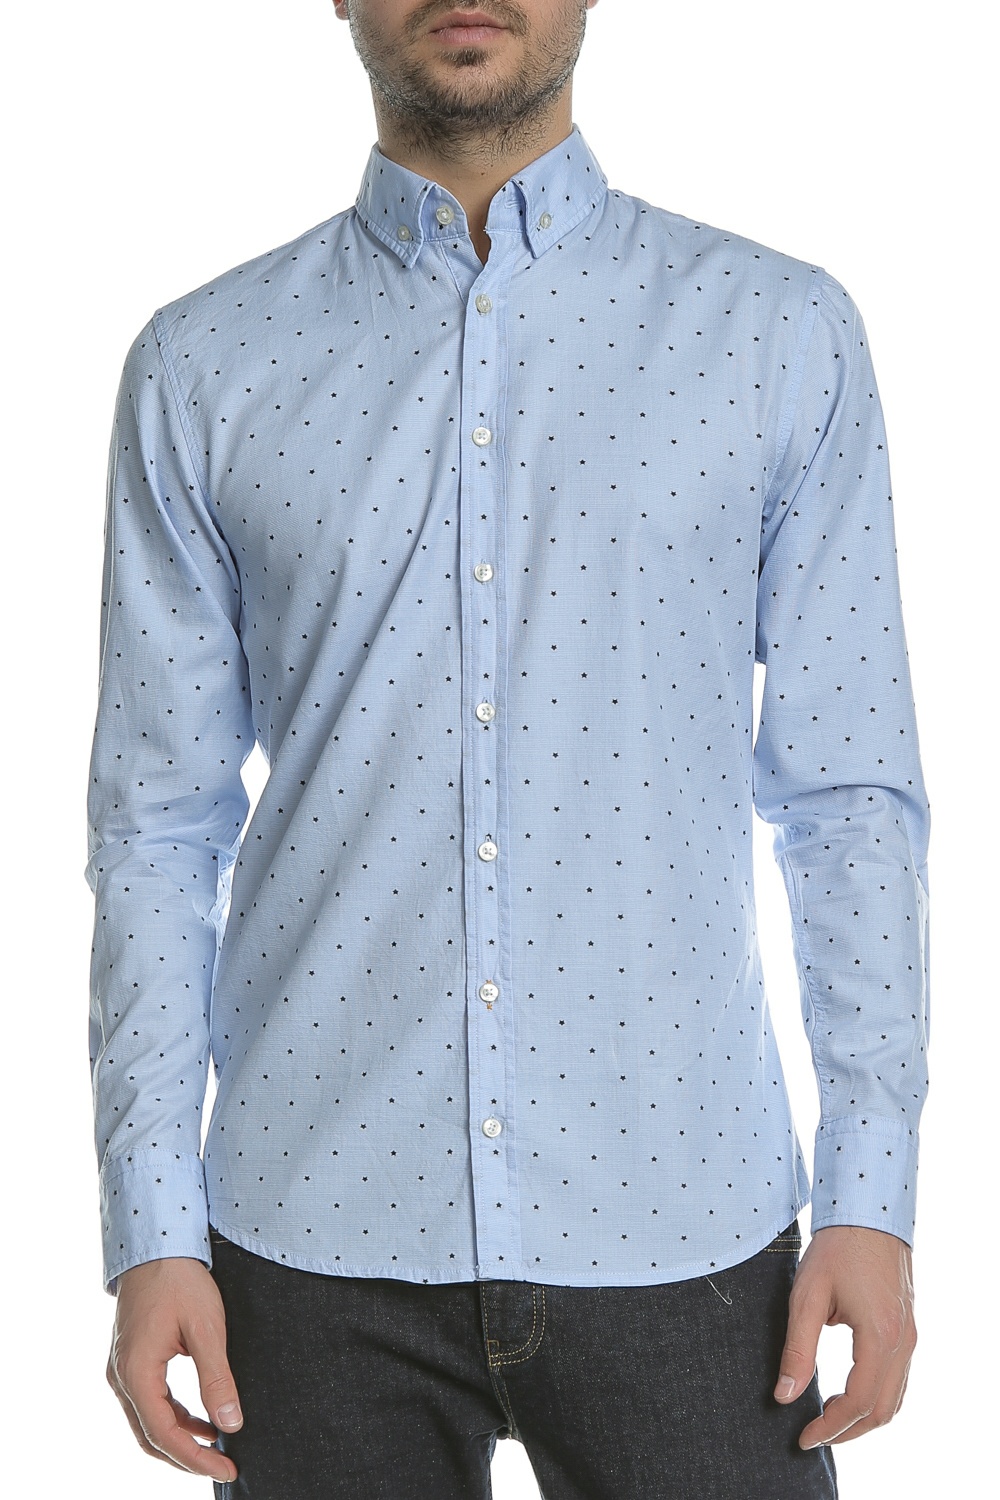 Ανδρικά/Ρούχα/Πουκάμισα/Μακρυμάνικα BOSS - Ανδρικό μακρυμάνικο πουκάμισο BOSS Epreppy γαλάζιο